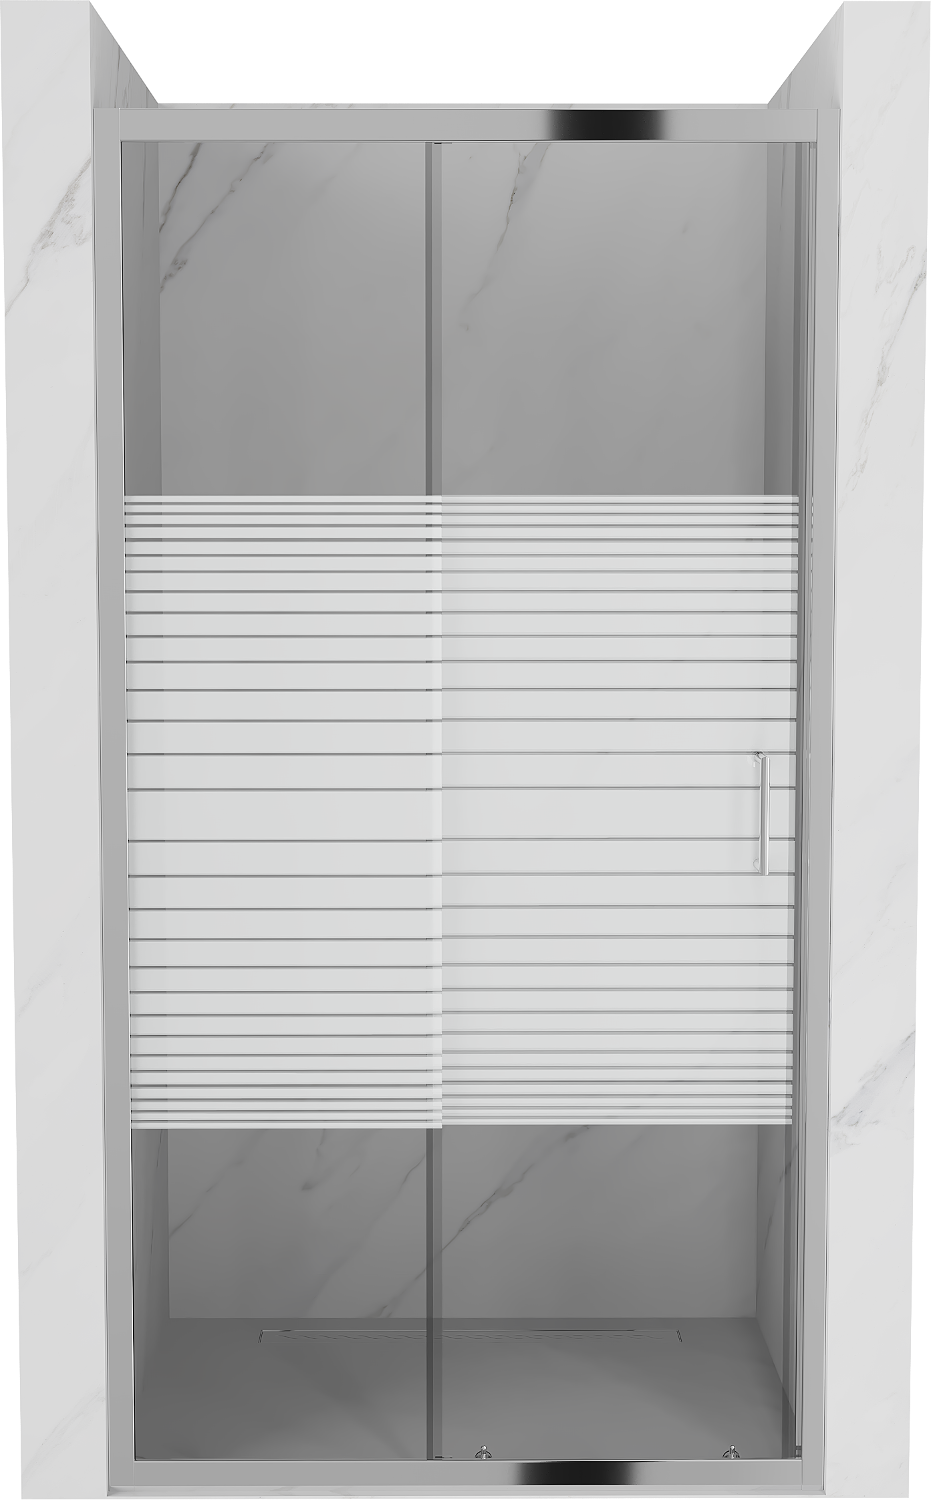 Mexen Apia drzwi prysznicowe rozsuwane 135 cm, pasy, chrom - 845-135-000-01-20